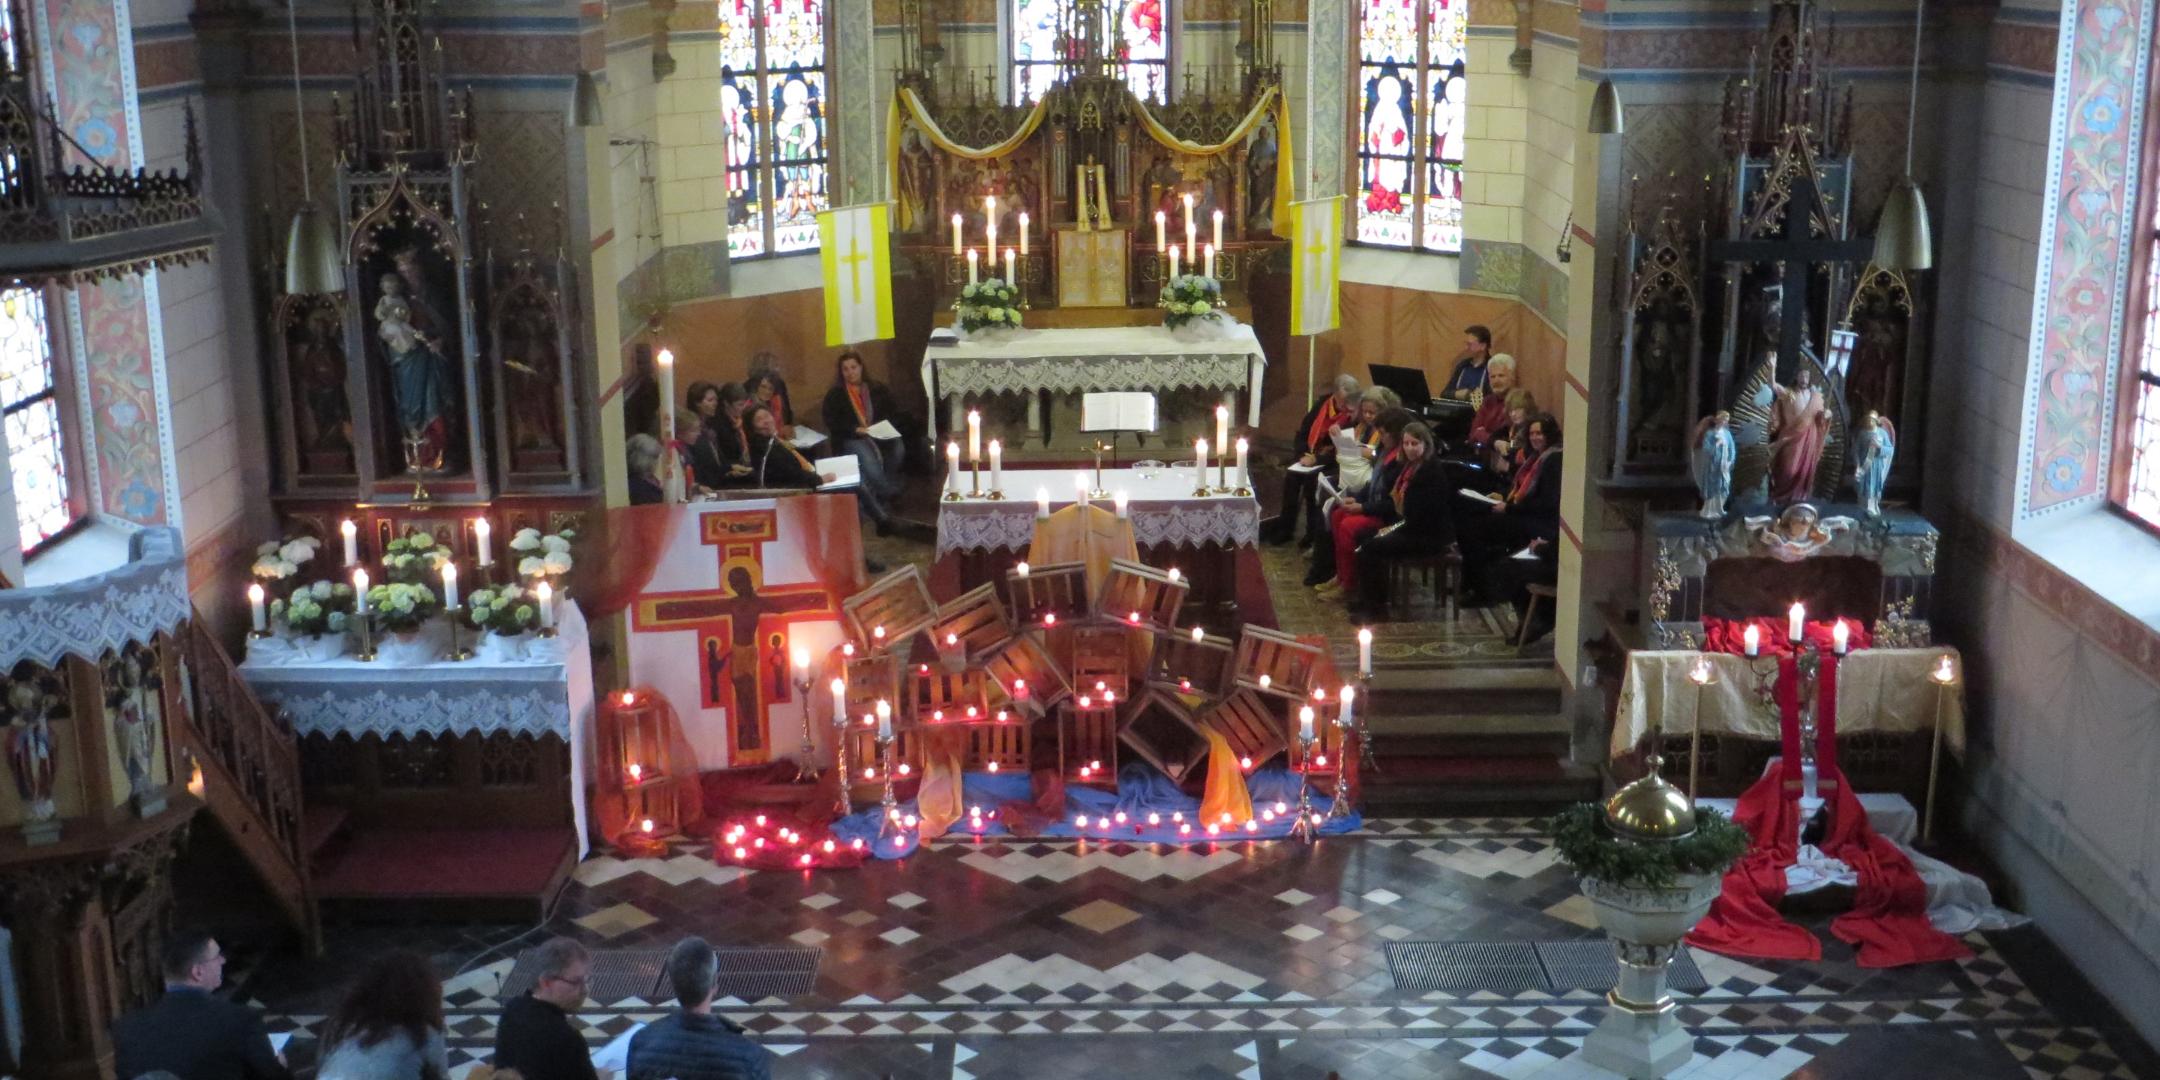 Feierlich mit Kerzen erleuchtet war die Kirche in Rayerschied beim Taizé-Gebet